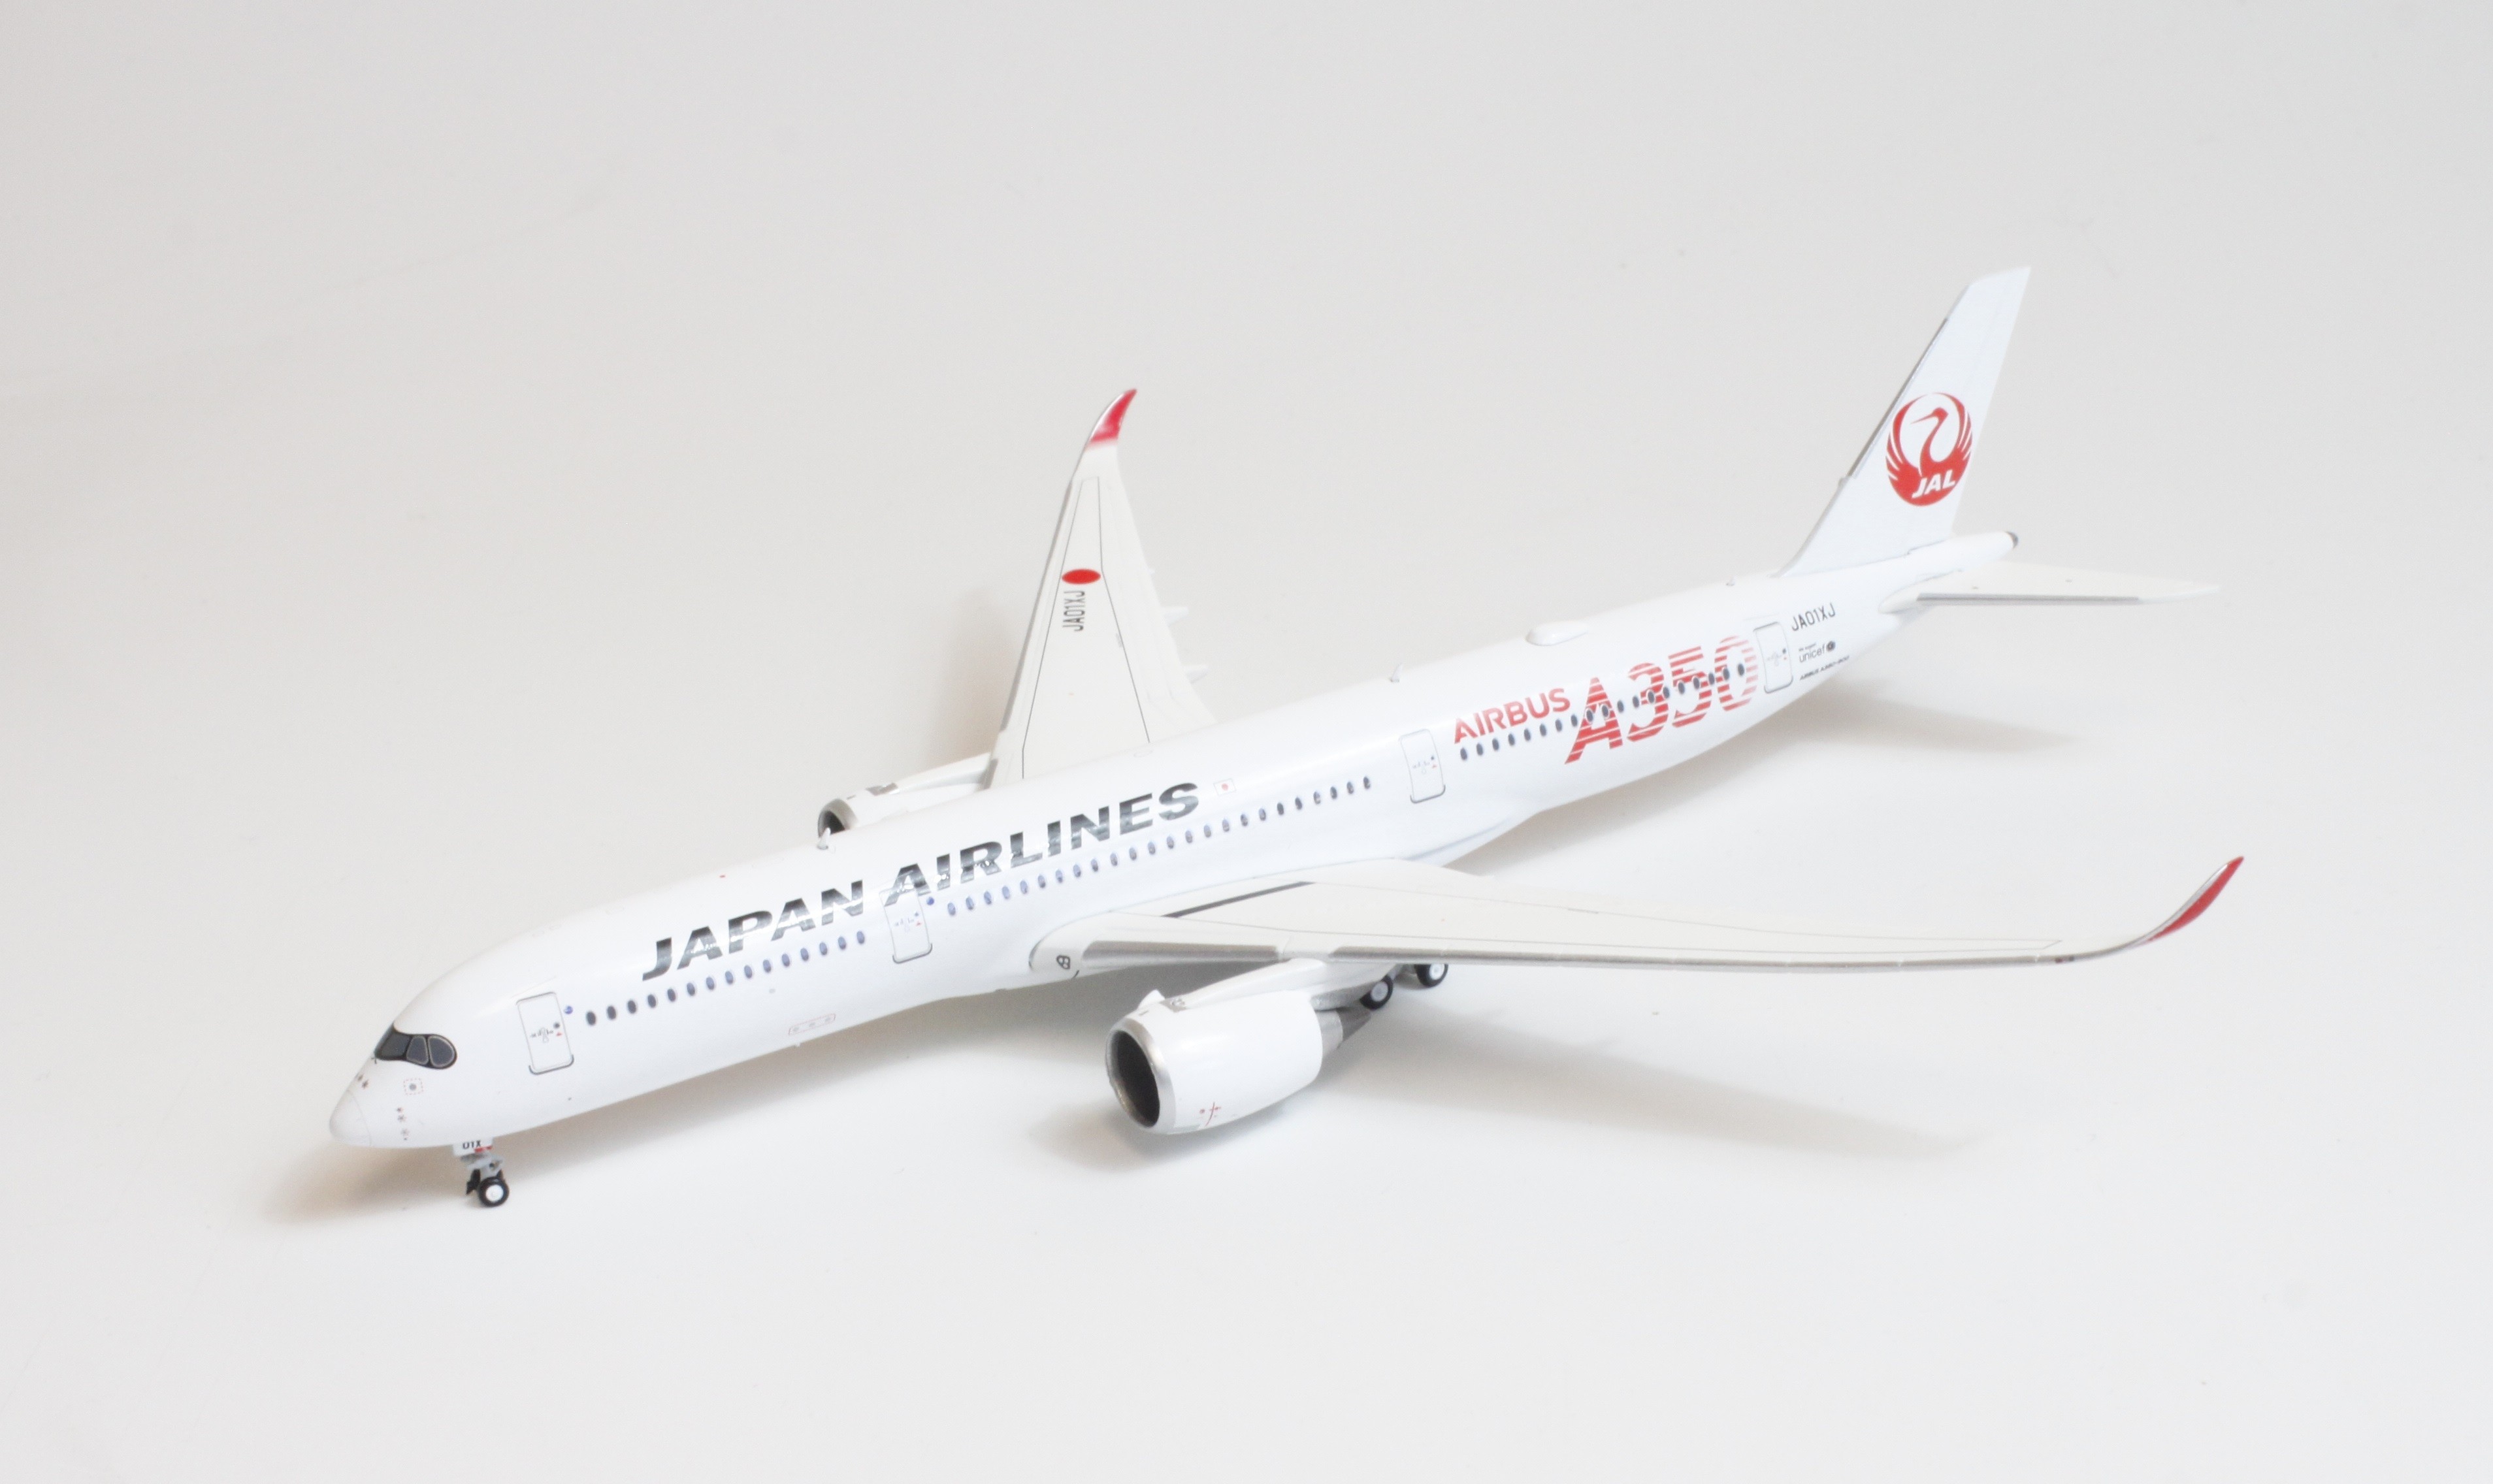 限定 日本航空 JAL A350 エアバス 3号機 1:200 モデルプレーン - 模型 